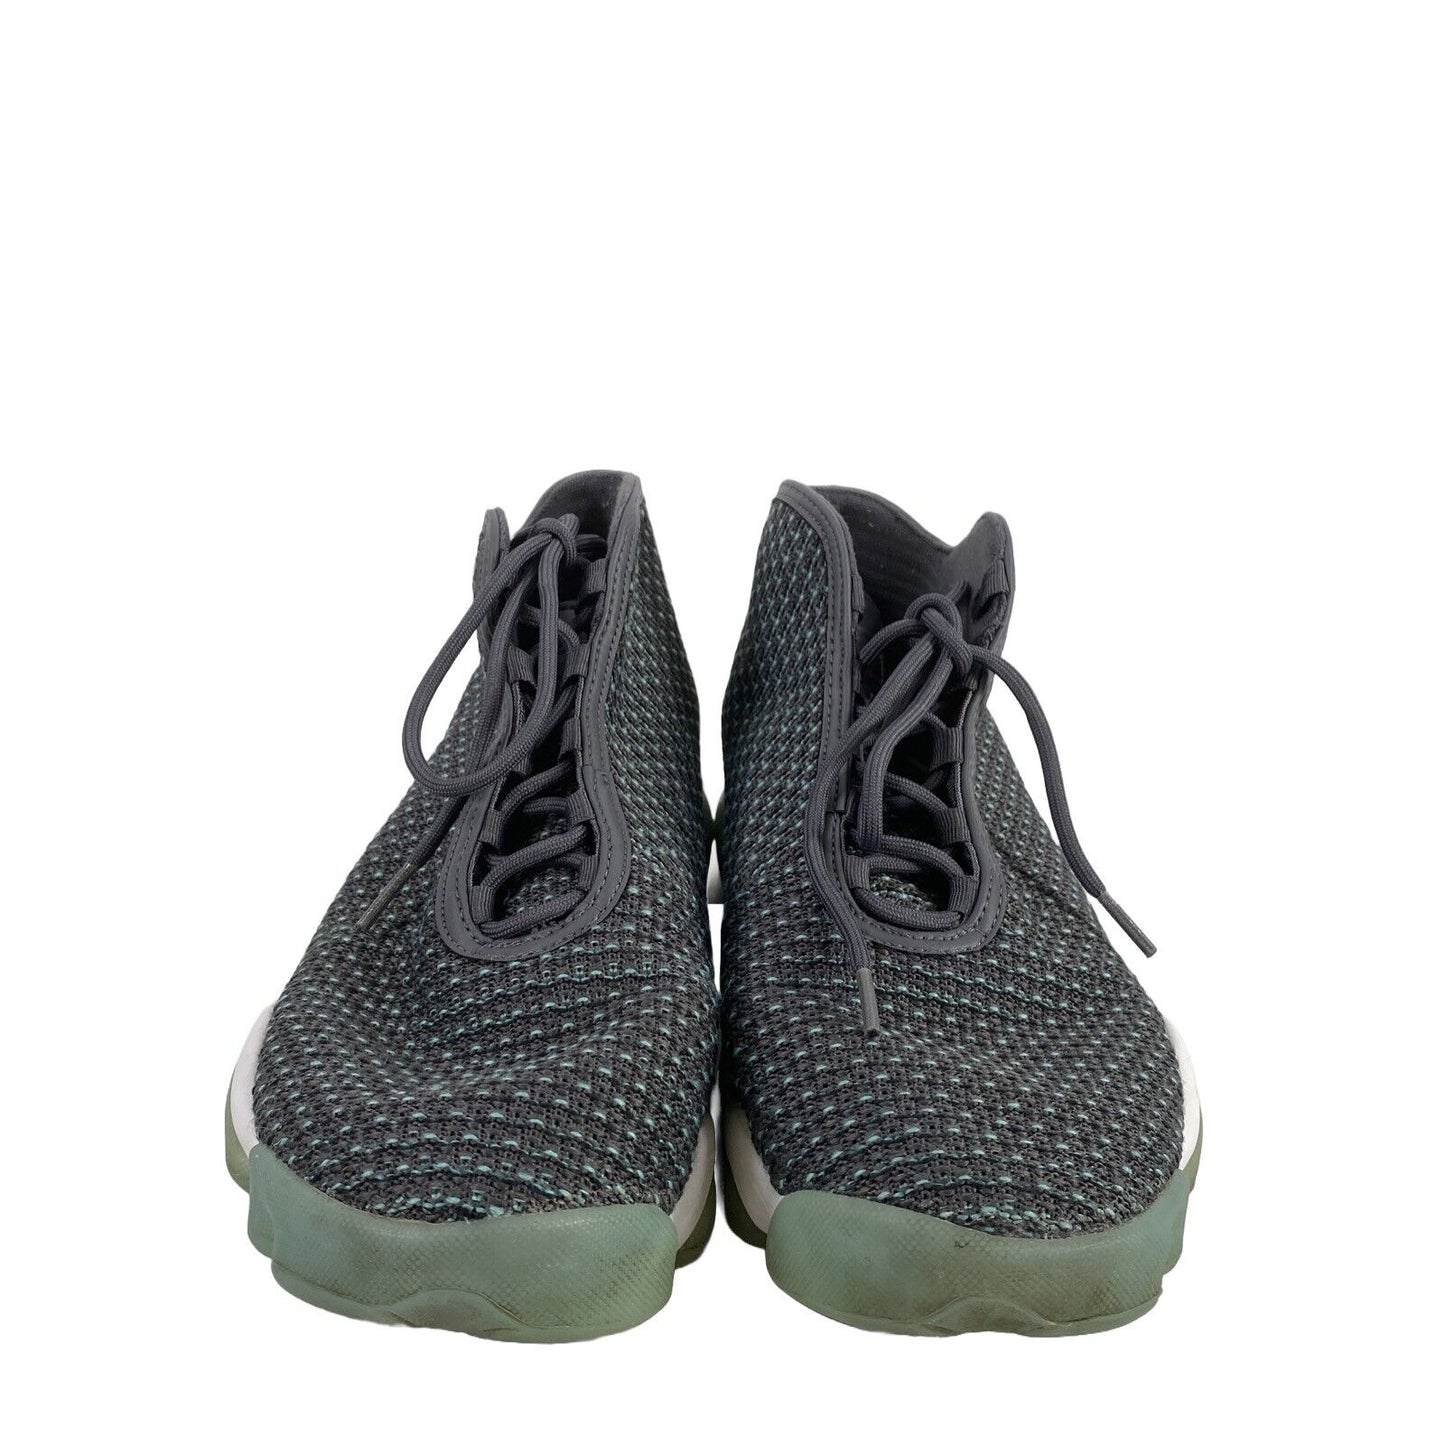 Nike Jordan Hombres Gris/Azul Horizon 823581 Zapatos deportivos con cordones - 10.5